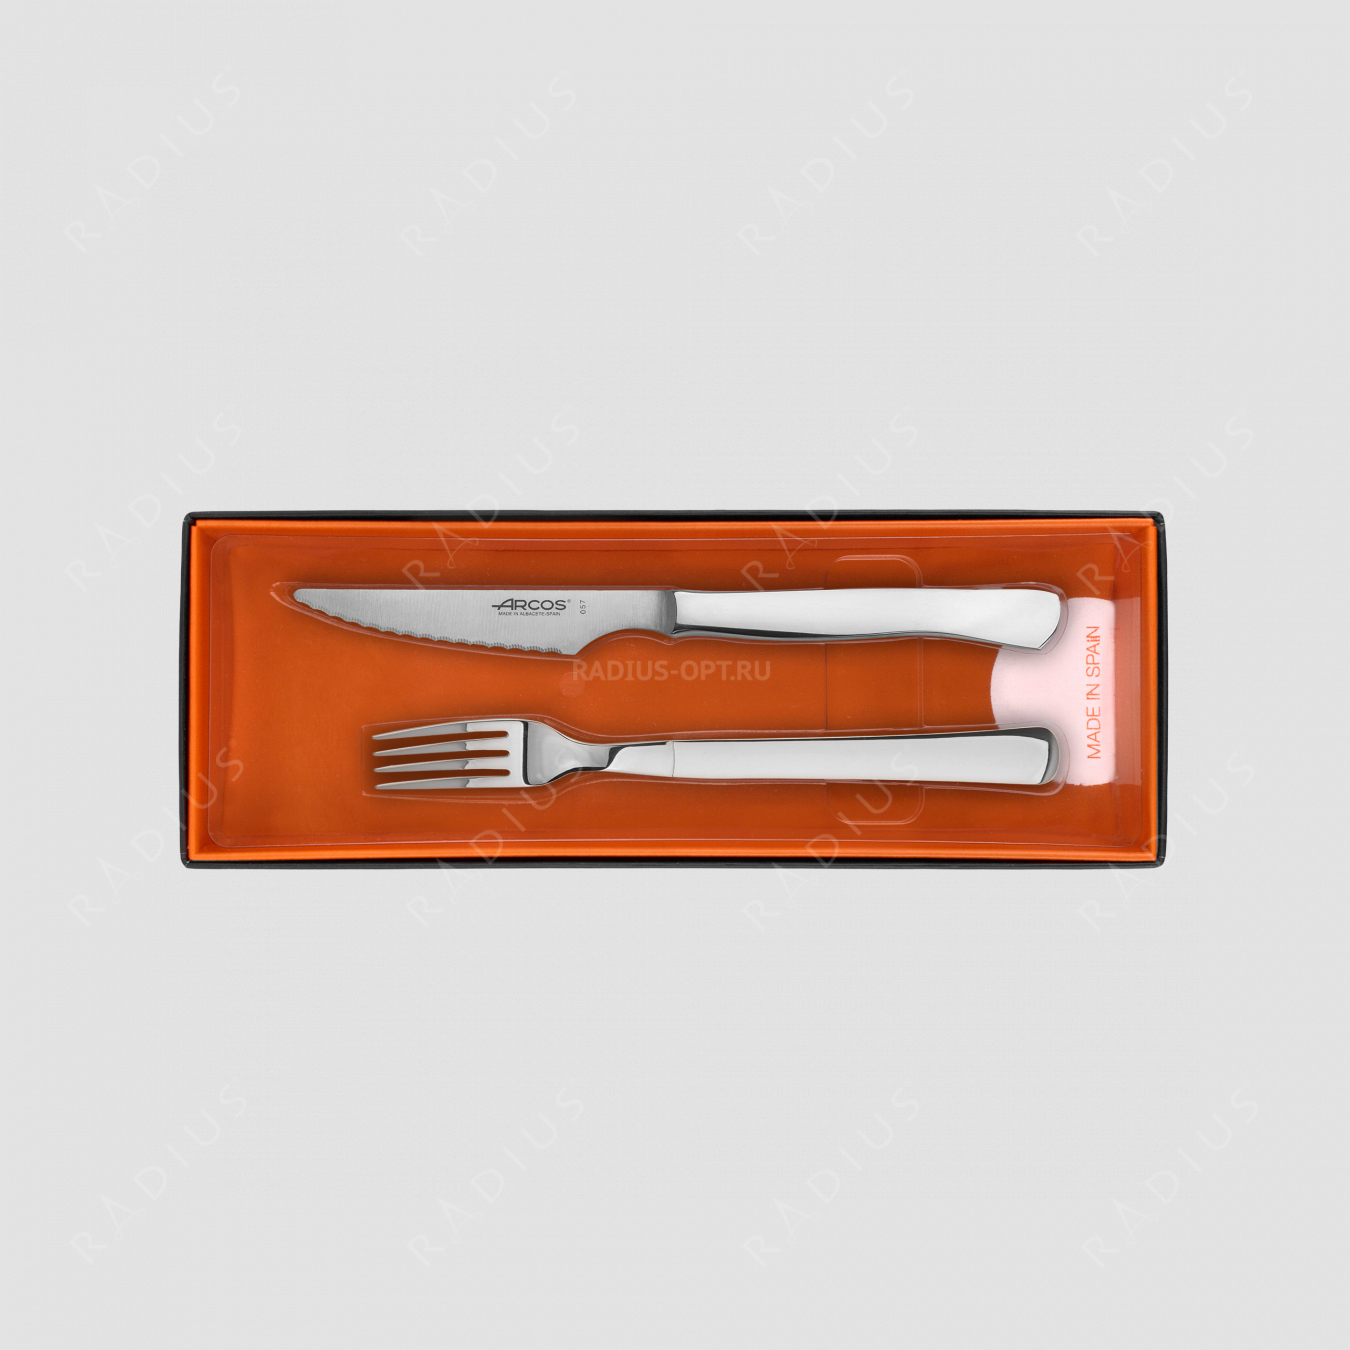 Набор столовых приборов для стейка на 6 персон, рукоять нержавеющая сталь, серия Steak Knives, ARCOS, Испания